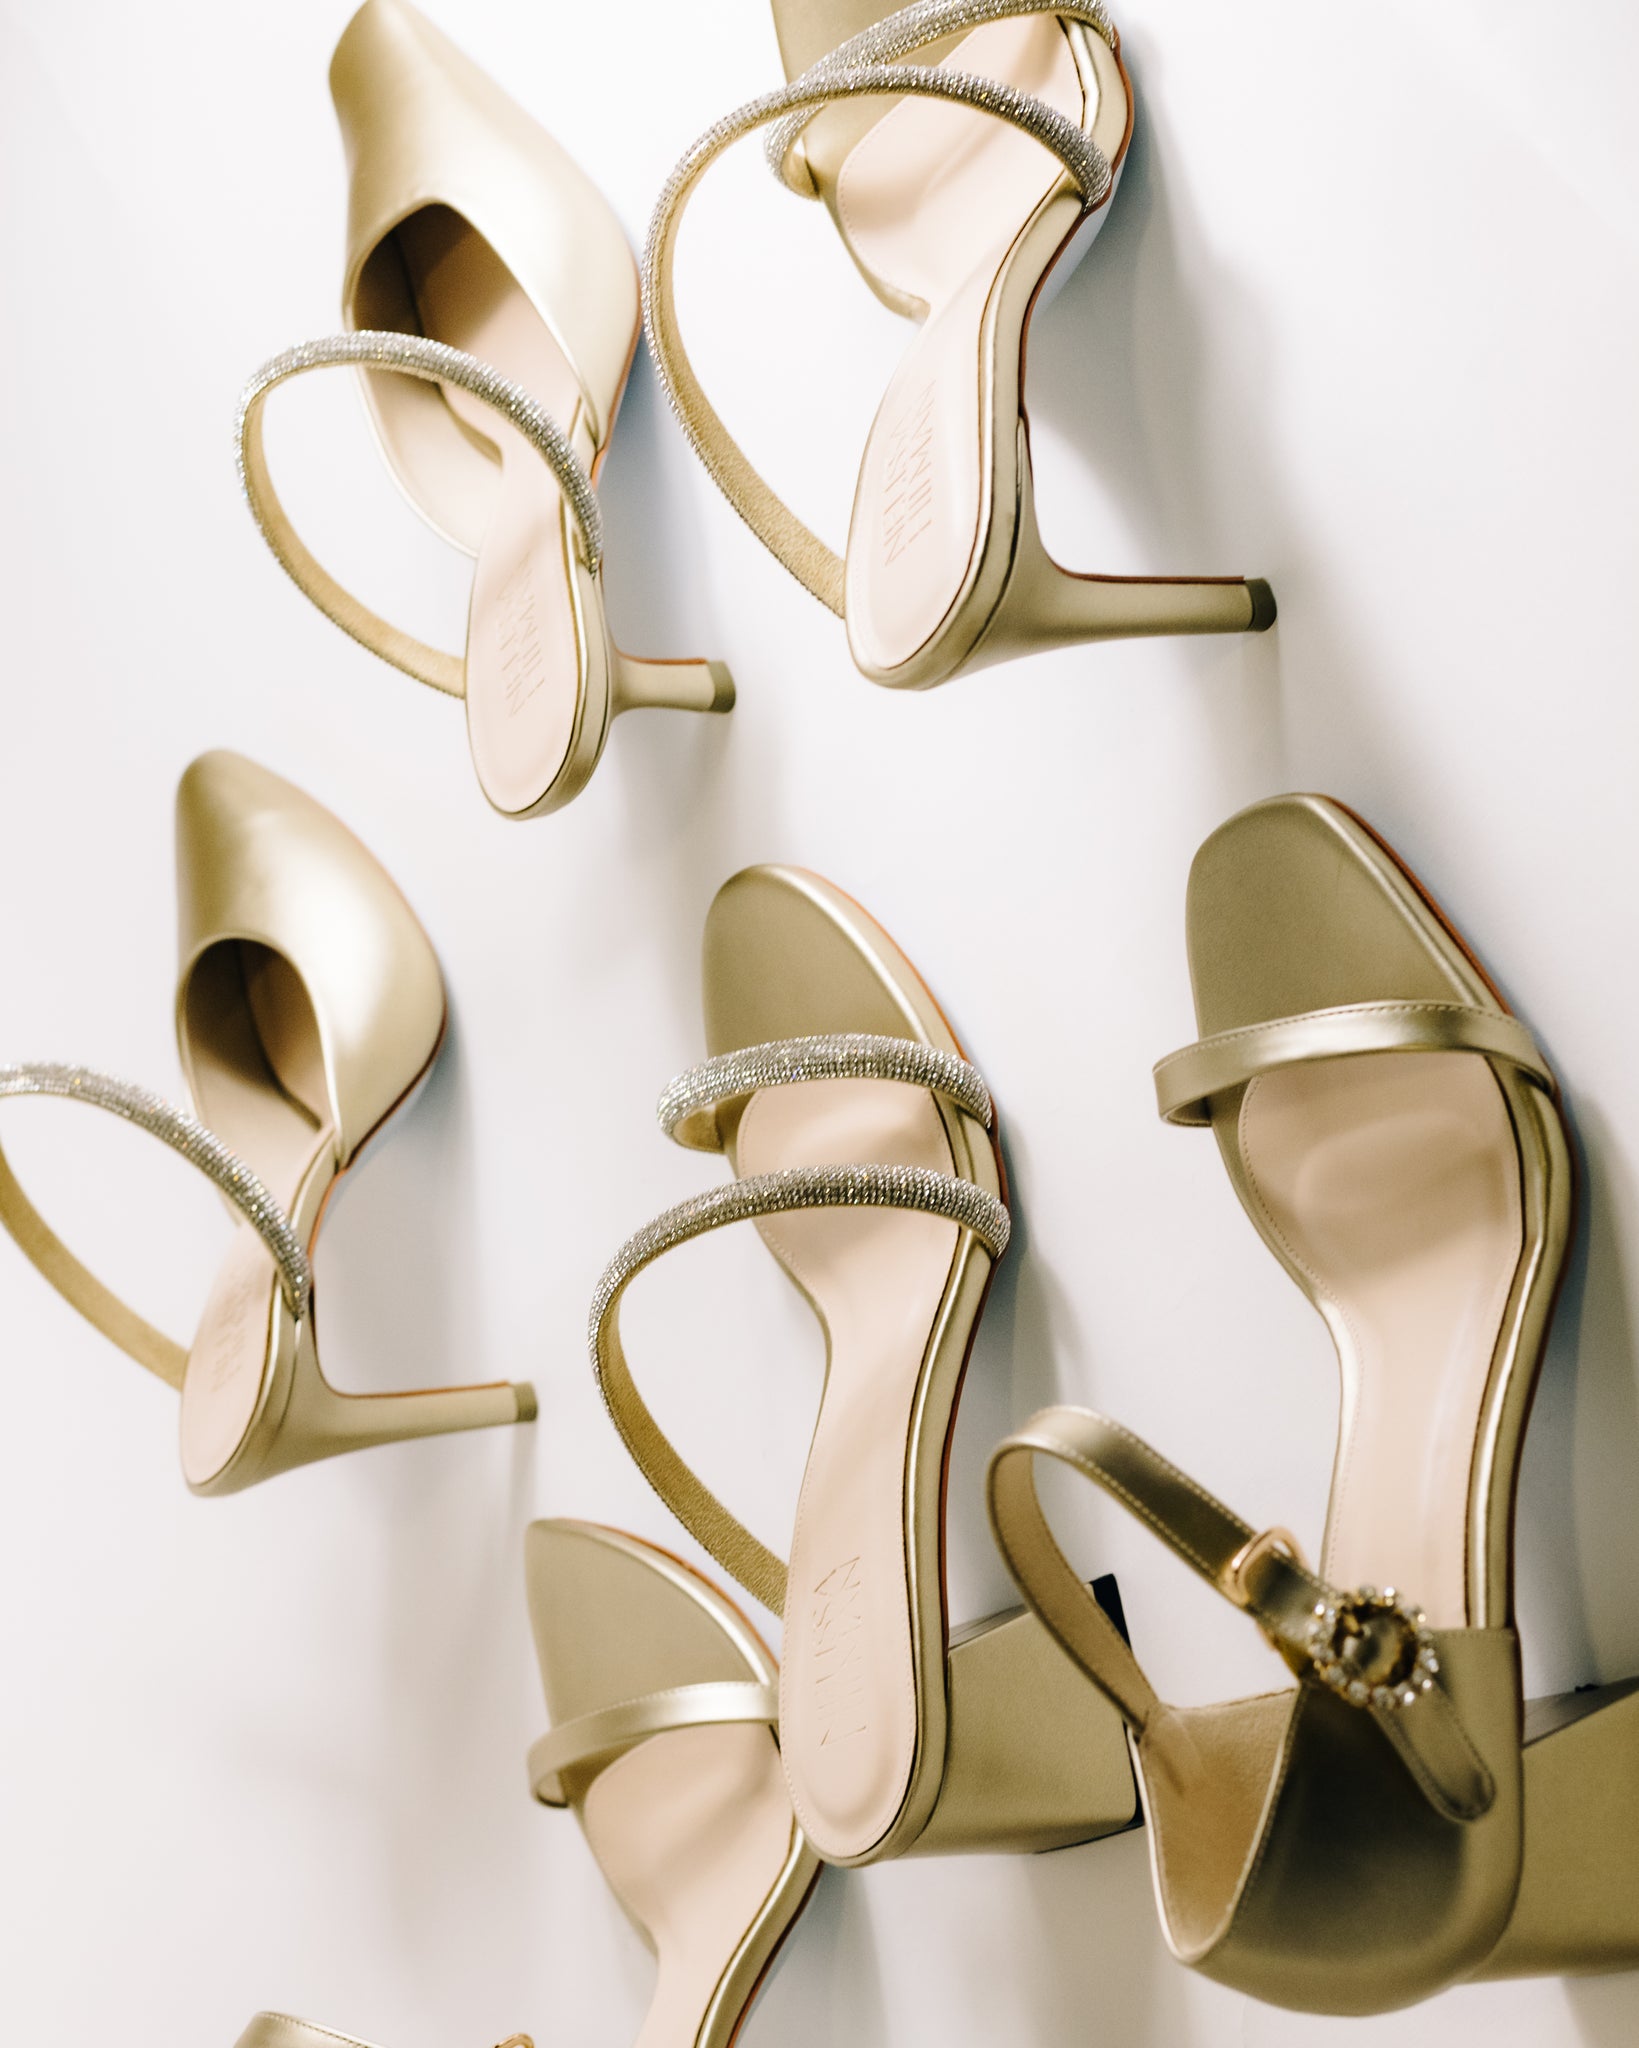 Aura Embellished Ankle Strap Block Heels (Gold)